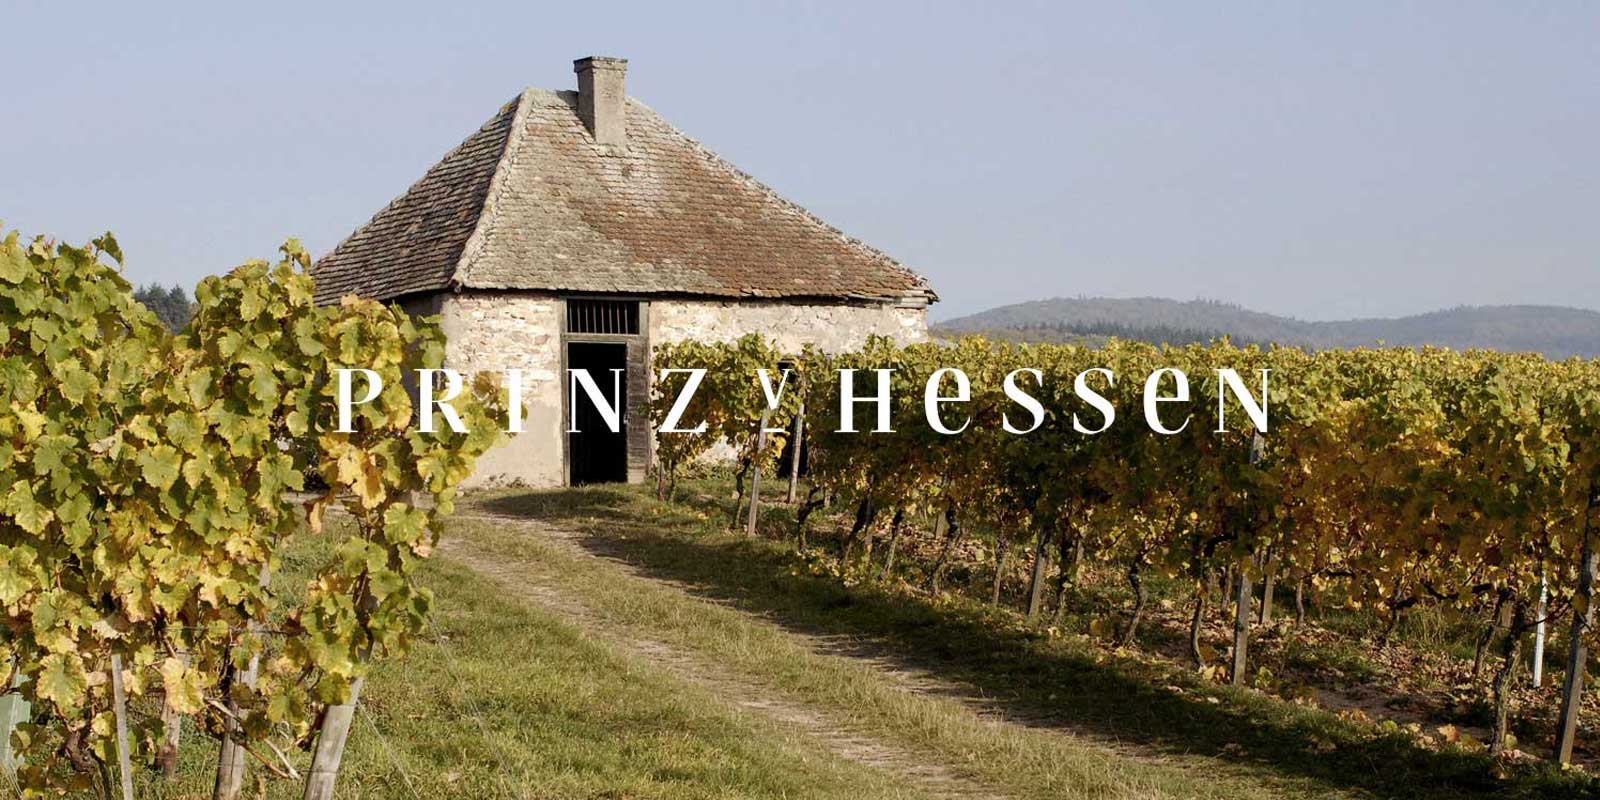 Celler Prince of Hesse - Regio vinicola de Rheingau El celler PRINZ VON HESSEN de Johannisberg al Rheingau es un dels productors de Riesling destacats a Alemanya i es membre fundador de VDP de l`associacio regional de Rheingau. Nombrosos reconeixements a casa i a l`estranger reflecteixen el celler PRINZ VON HESSEN, que esta al maxim nivell. Els vins i vins escumosos del celler PRINZ VON HESSEN han guanyat molts premis i han rebut alts premis internacionals.